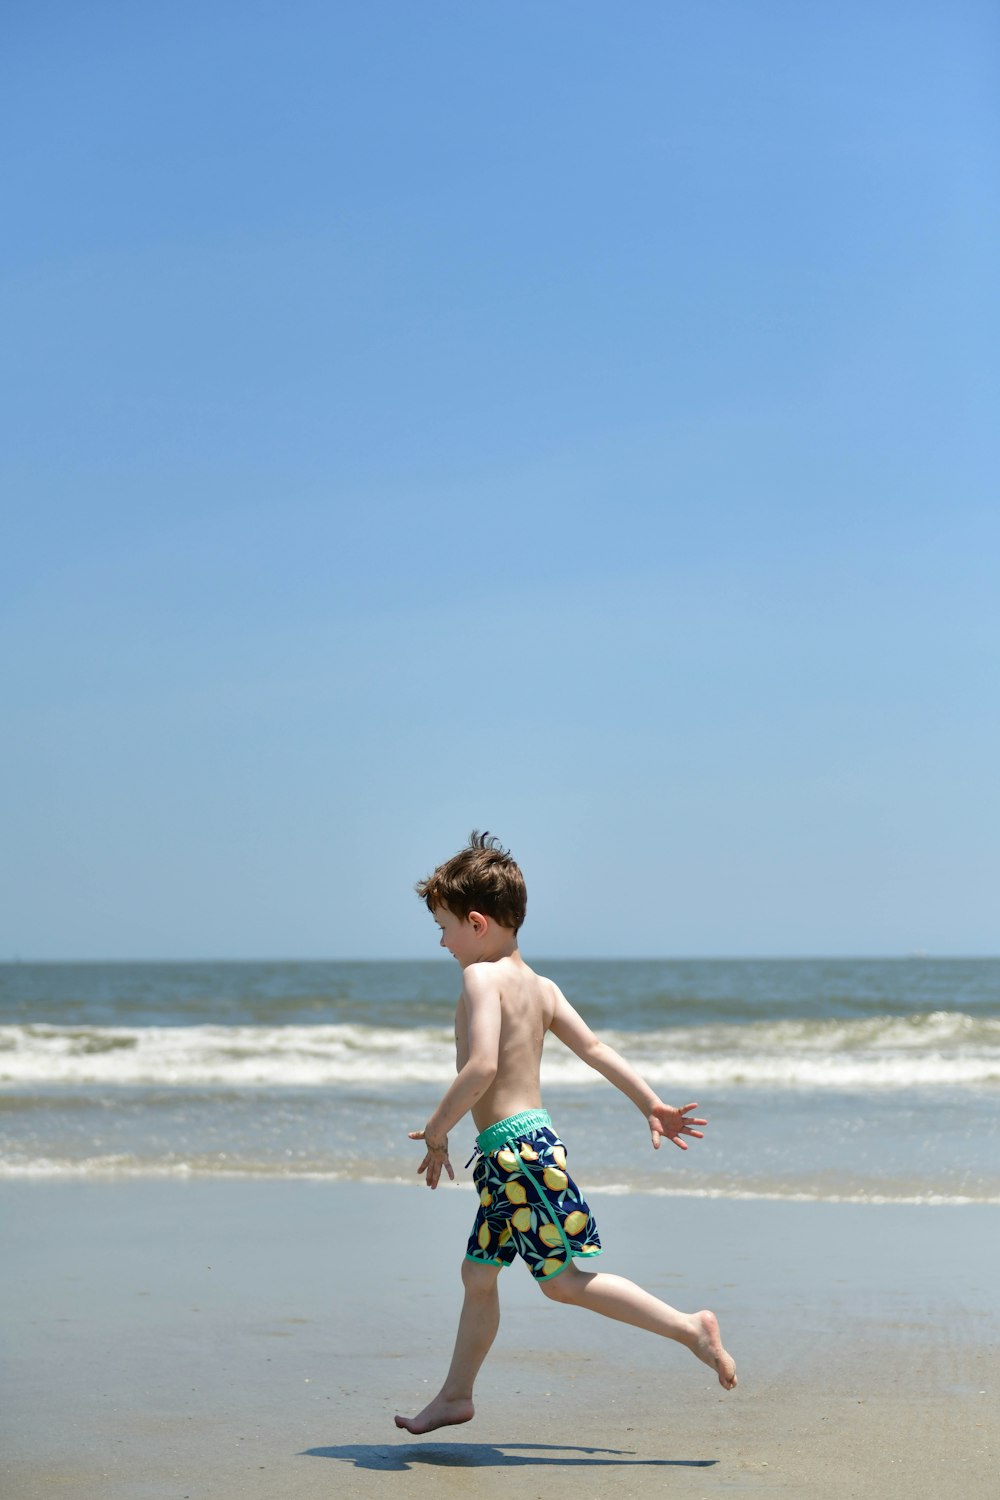 Un jeune garçon courant sur la plage avec un frisbee